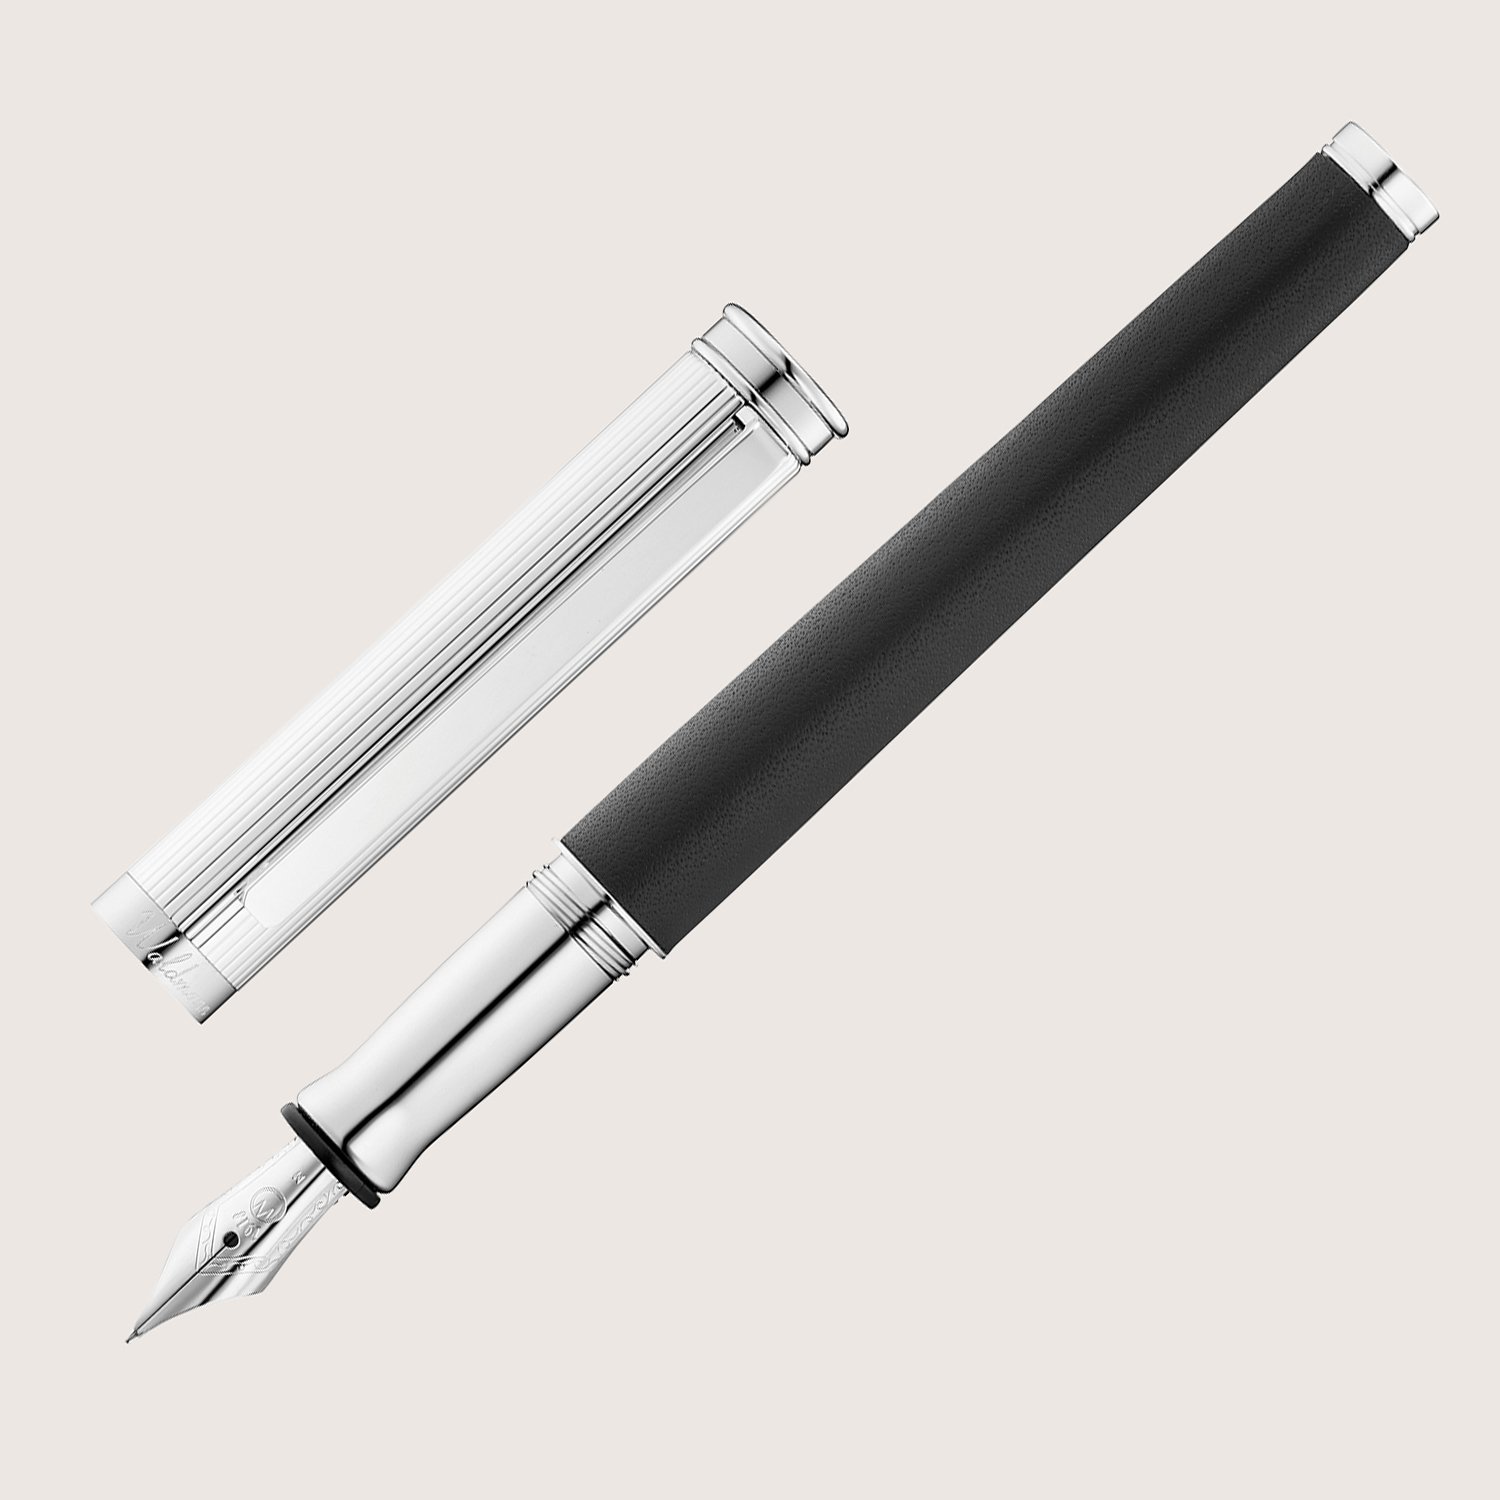 SOLON Füllfederhalter mit Edelstahlfeder M Silber Linien-Design Nappaleder schwarz